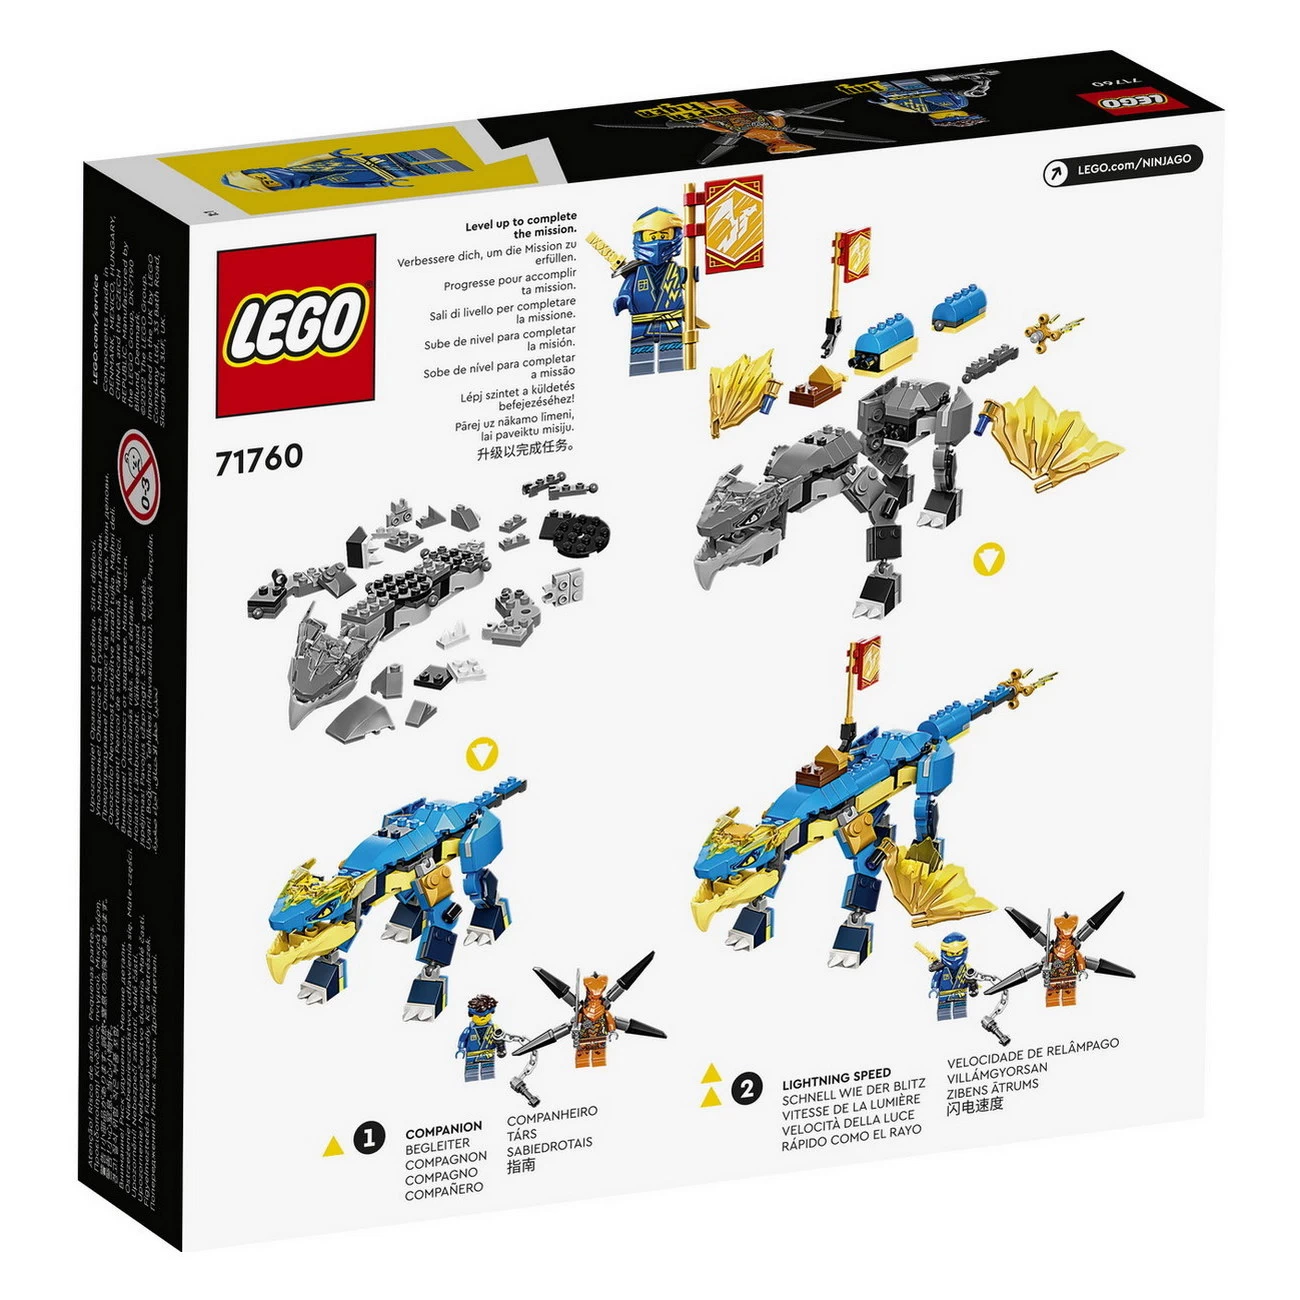 LEGO NINJAGO 71760 - Jays Donnerdrache